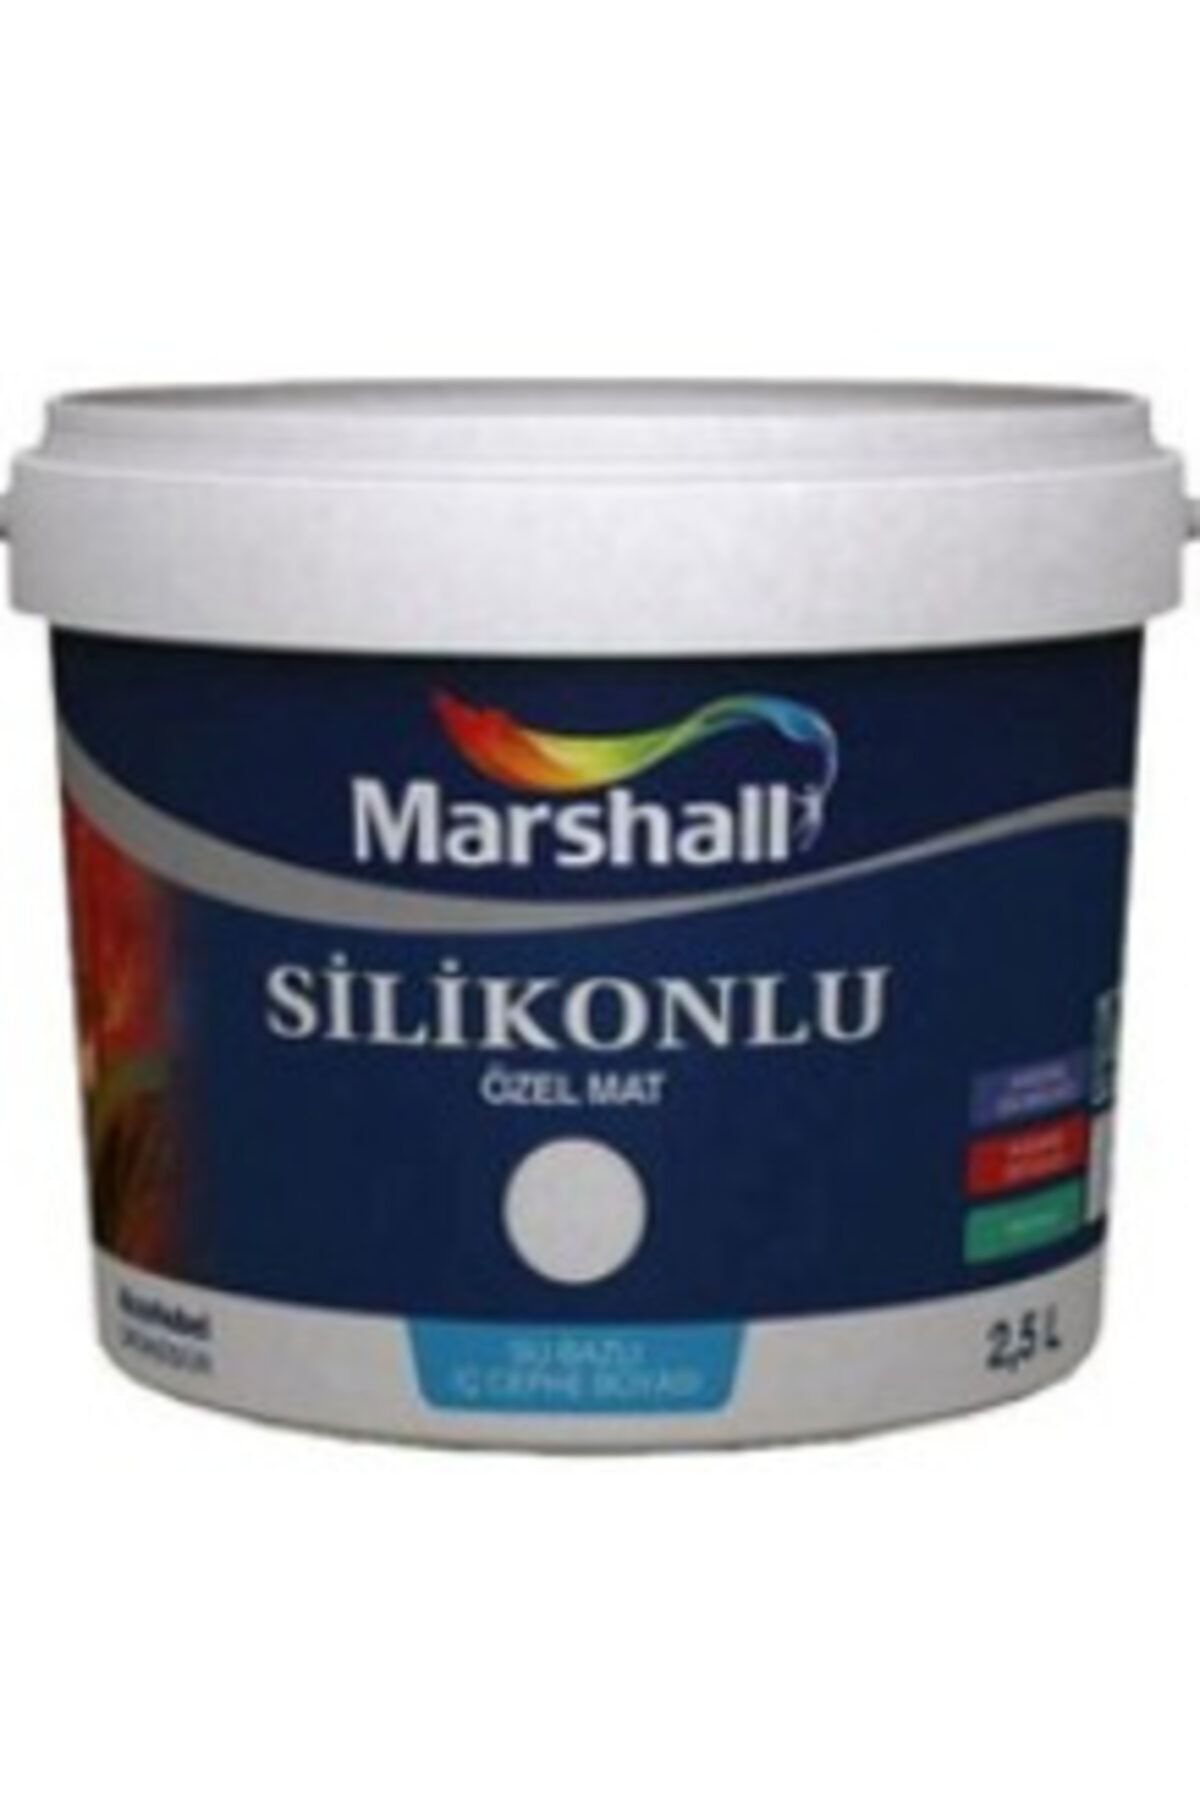 Marshall Nil Kıyısı Rengi Silikonlu Özel Mat Boya 2.5lt